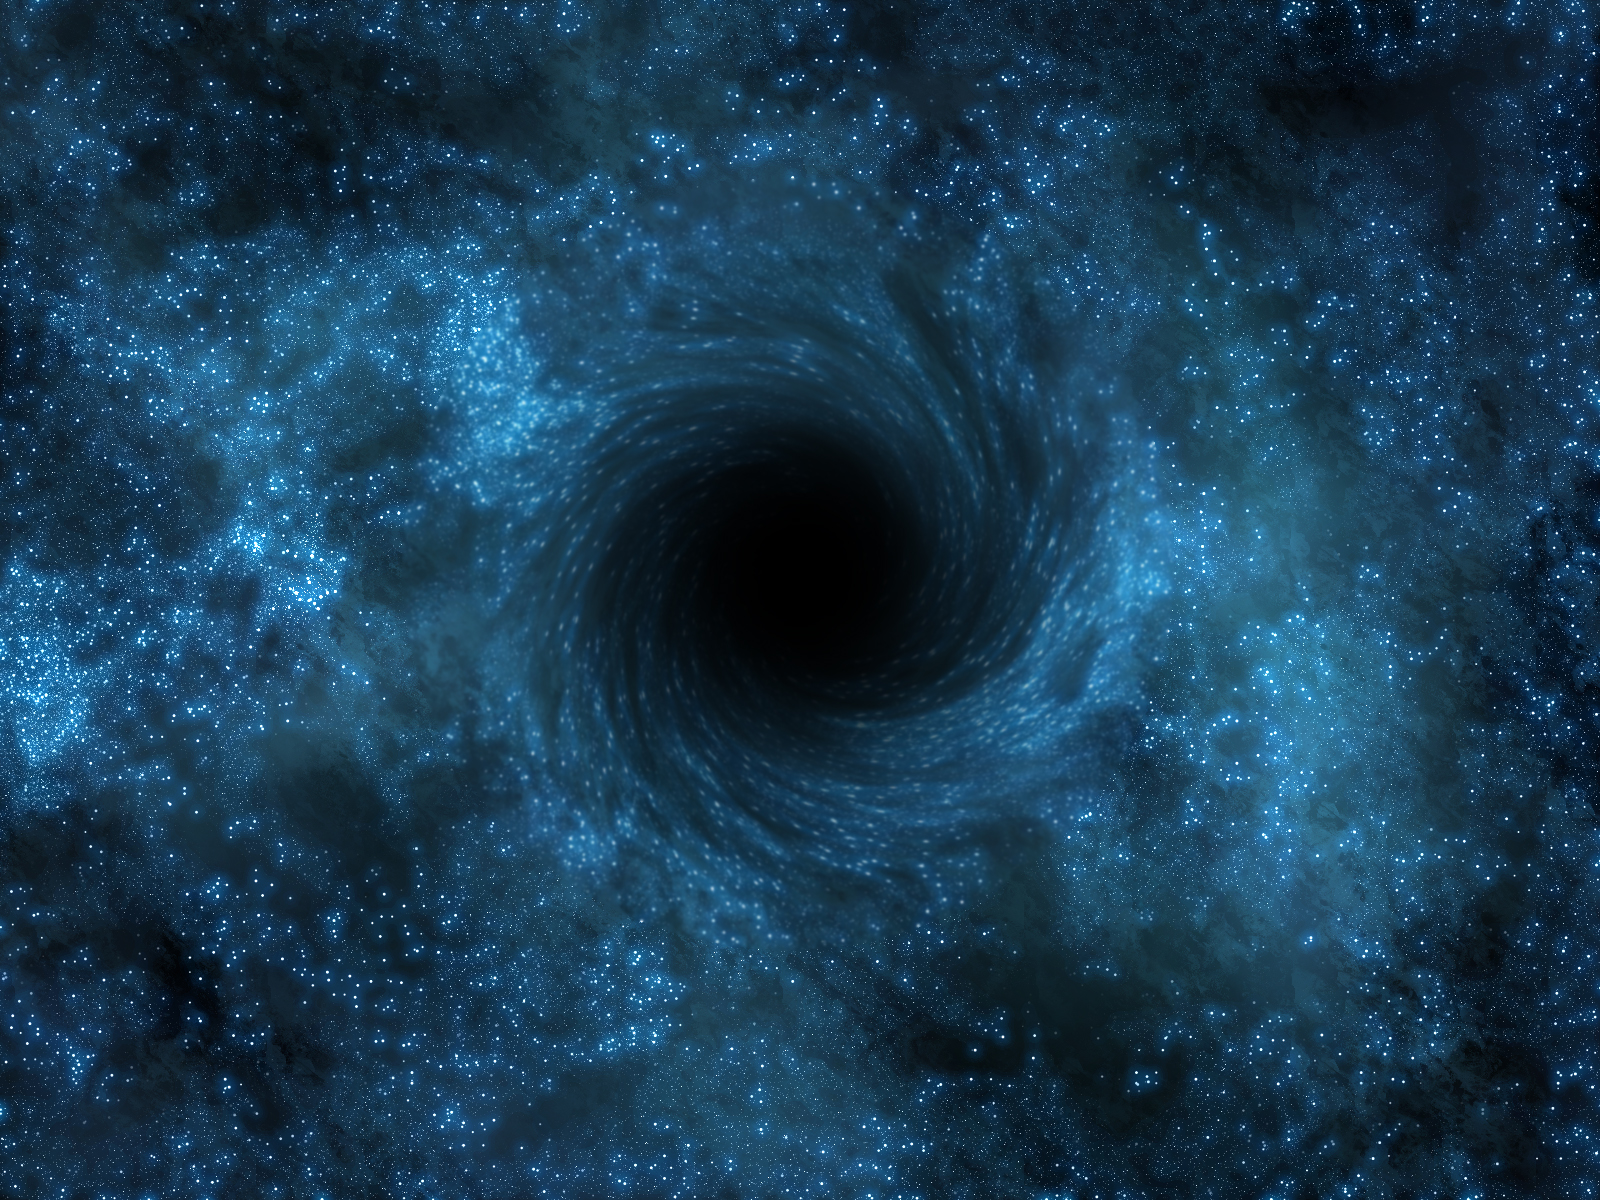 black hole, sci fi, space Image for desktop